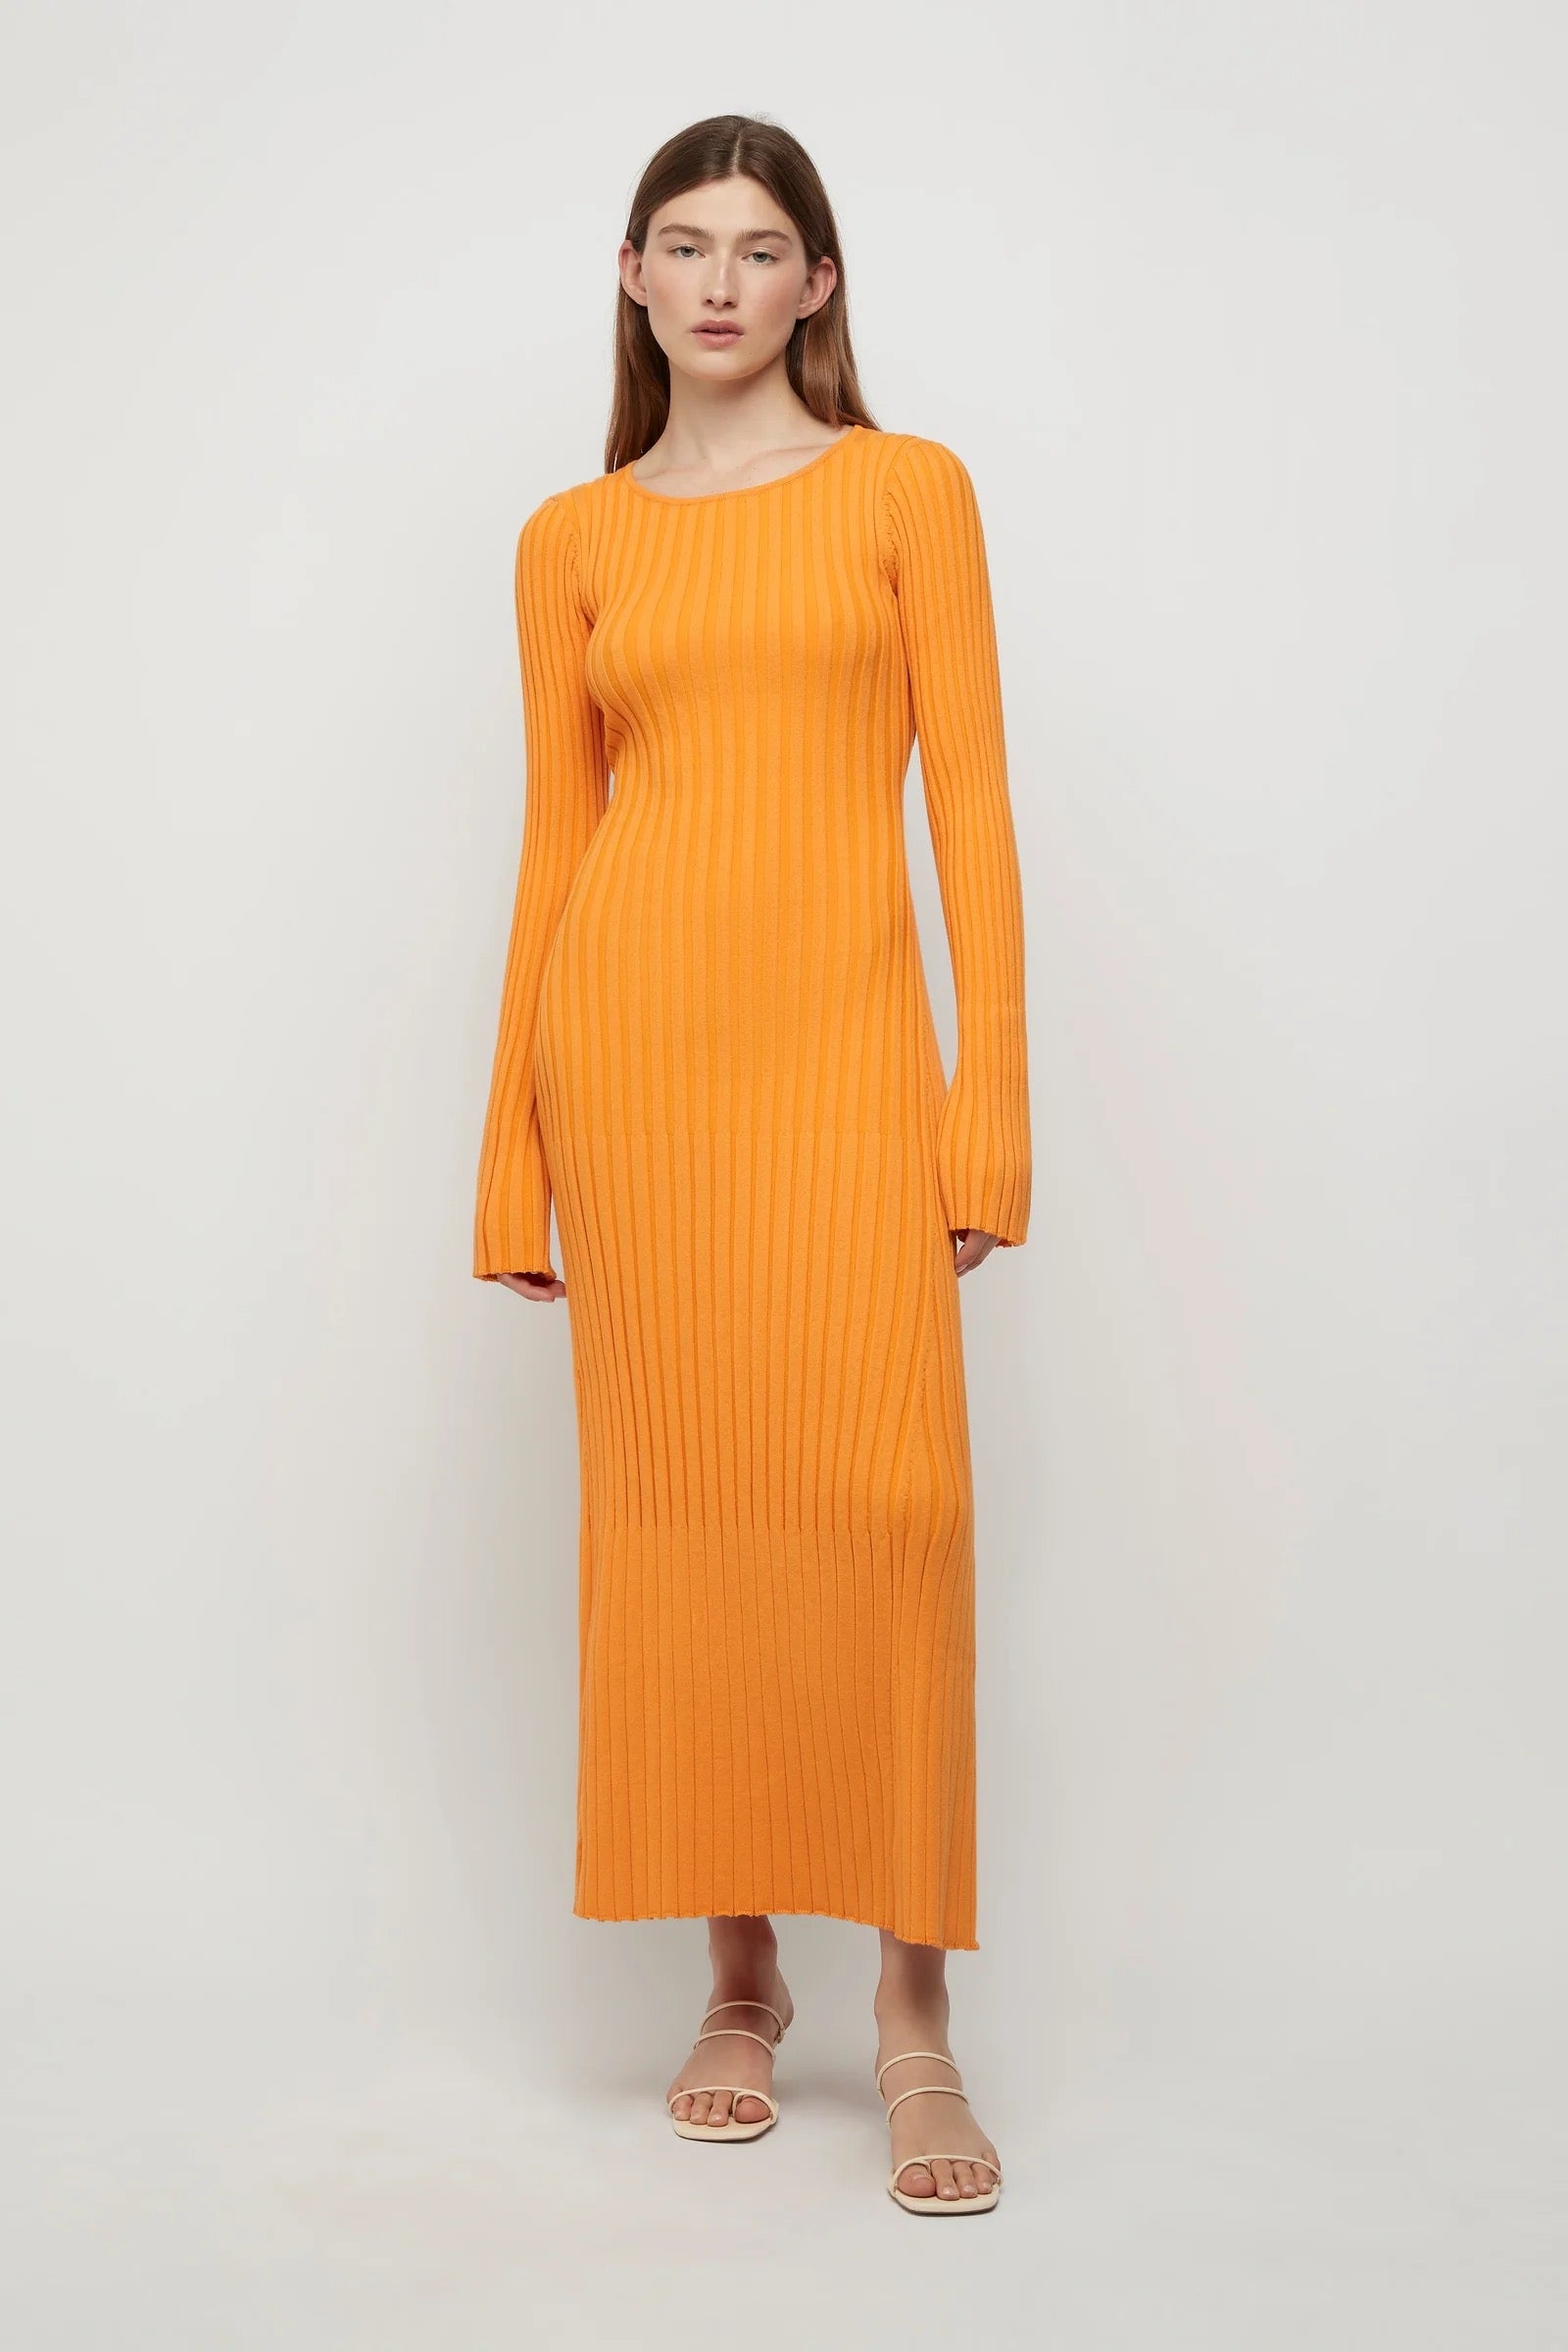 Lowry Cross-Back Knit Dress Tangerine